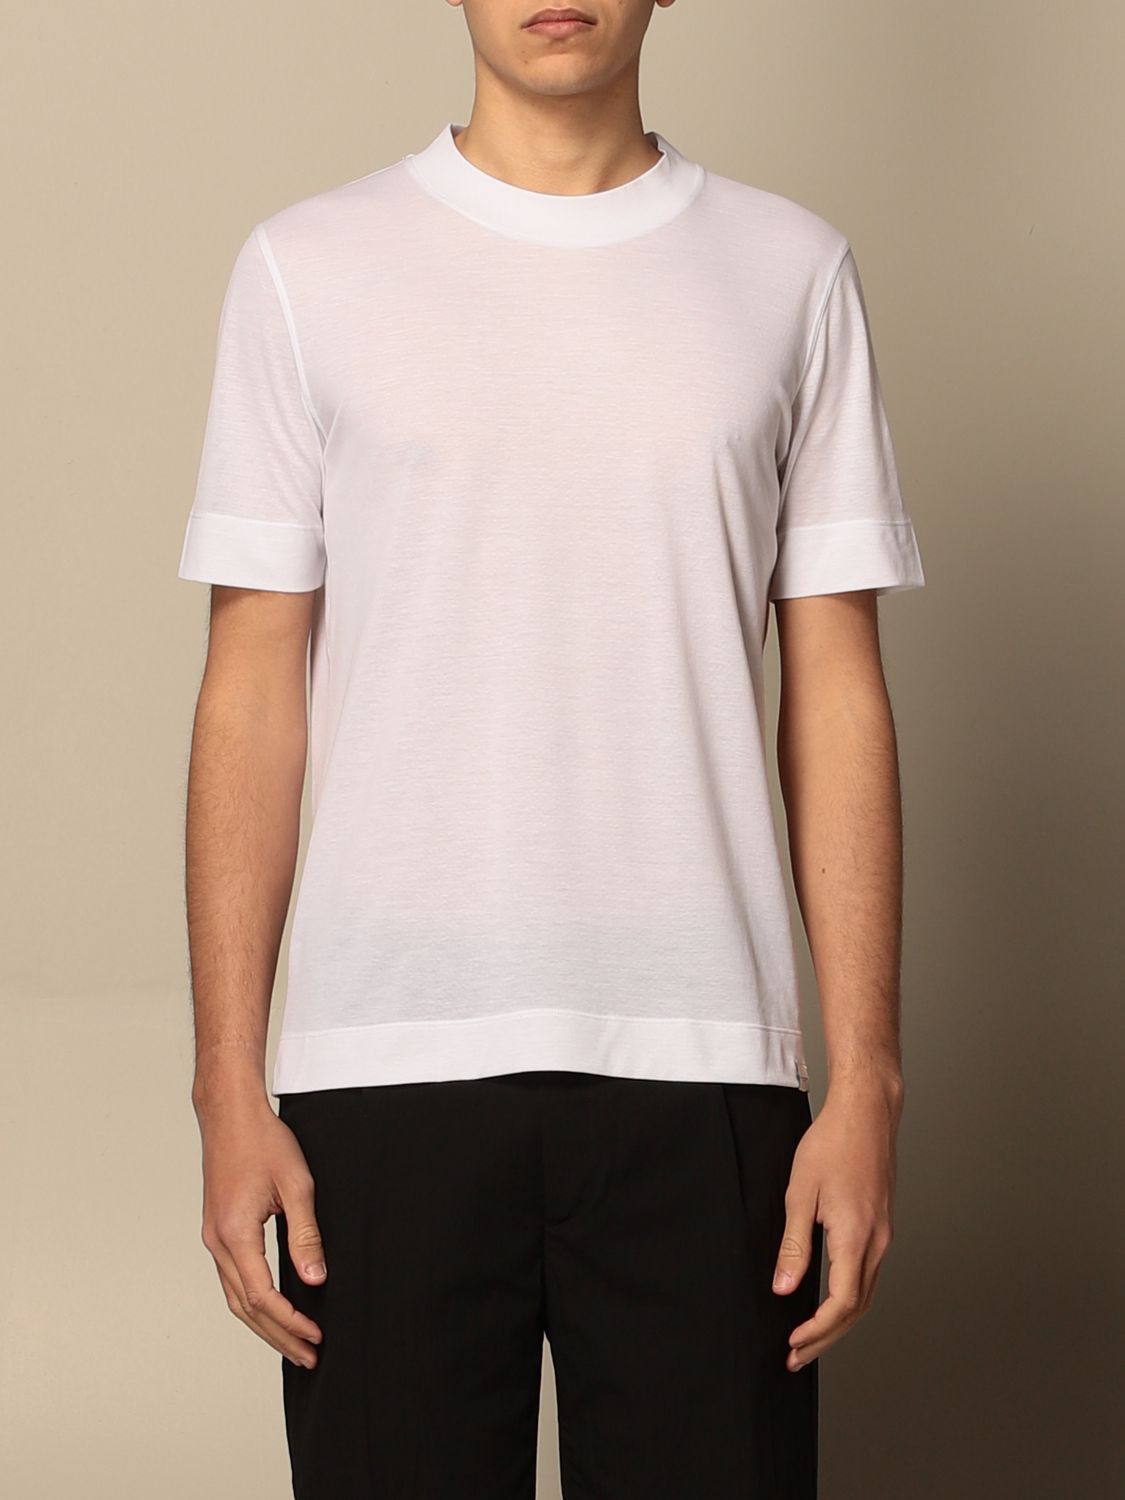 PAOLO PECORA: basic T-shirt with mini logo - White | Paolo Pecora t ...